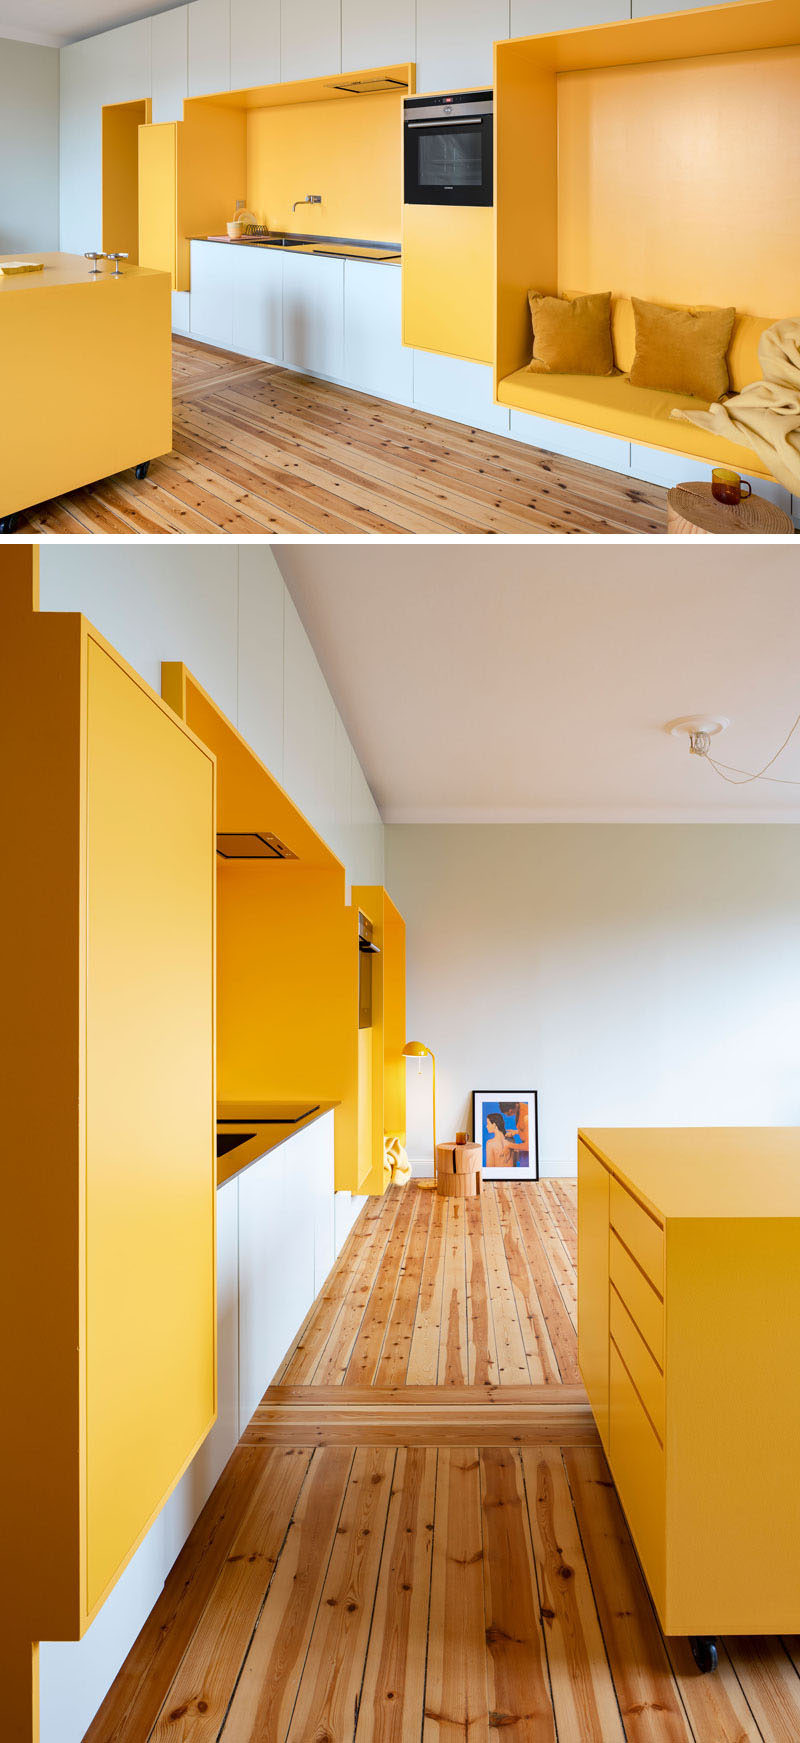 Căn hộ được cải tạo từ những năm 1920 ở Stockholm này đã nhận được một kiểu trang điểm hiện đại, với một bức tường được thiết kế tùy chỉnh bao gồm các phần được xây dựng màu vàng chứa một nhà bếp và một góc ngồi. #InteriorDesign #K Kitchen #SeatNook